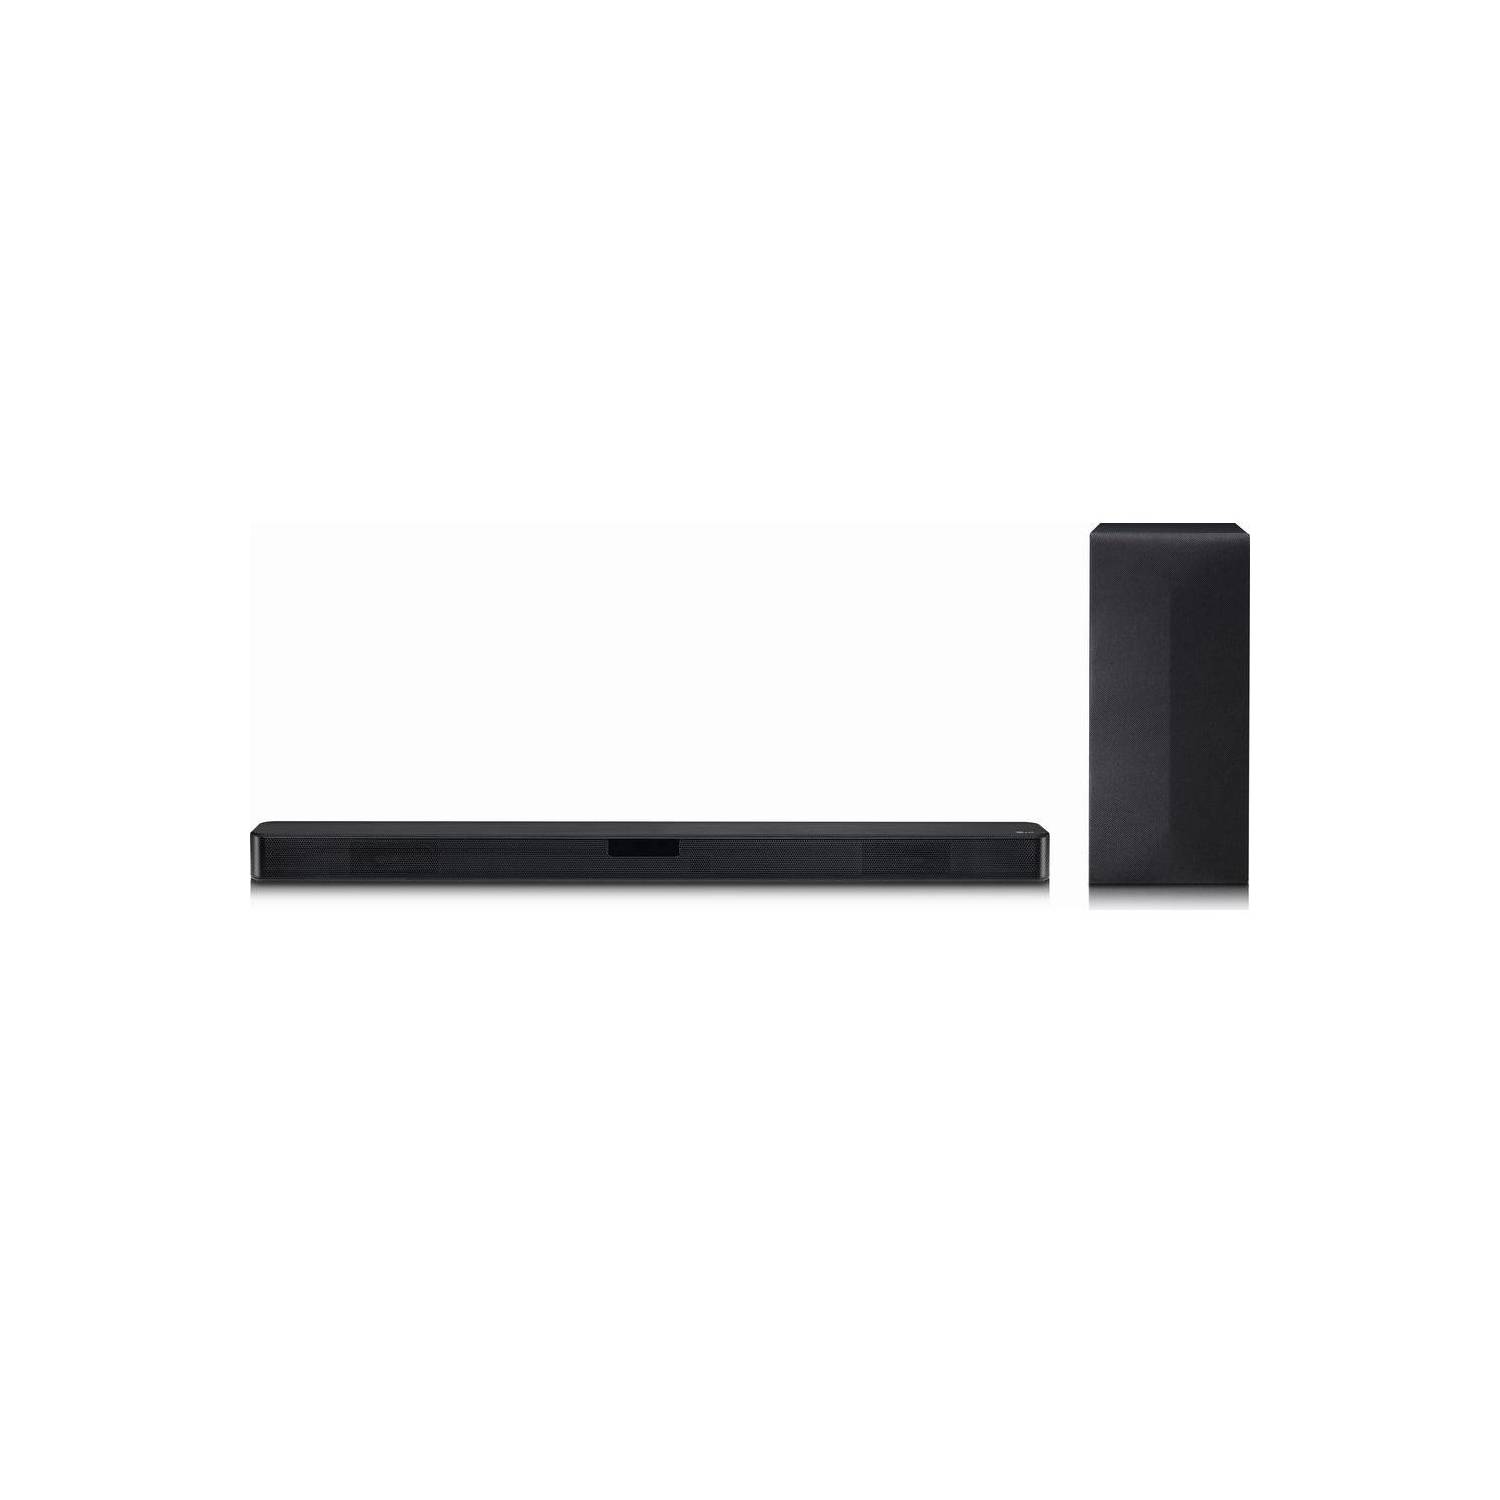 Sony Barra de sonido de 2.1 inalámbrico Bluetooth HT-S350 - Negro -  Inversiones Varemat